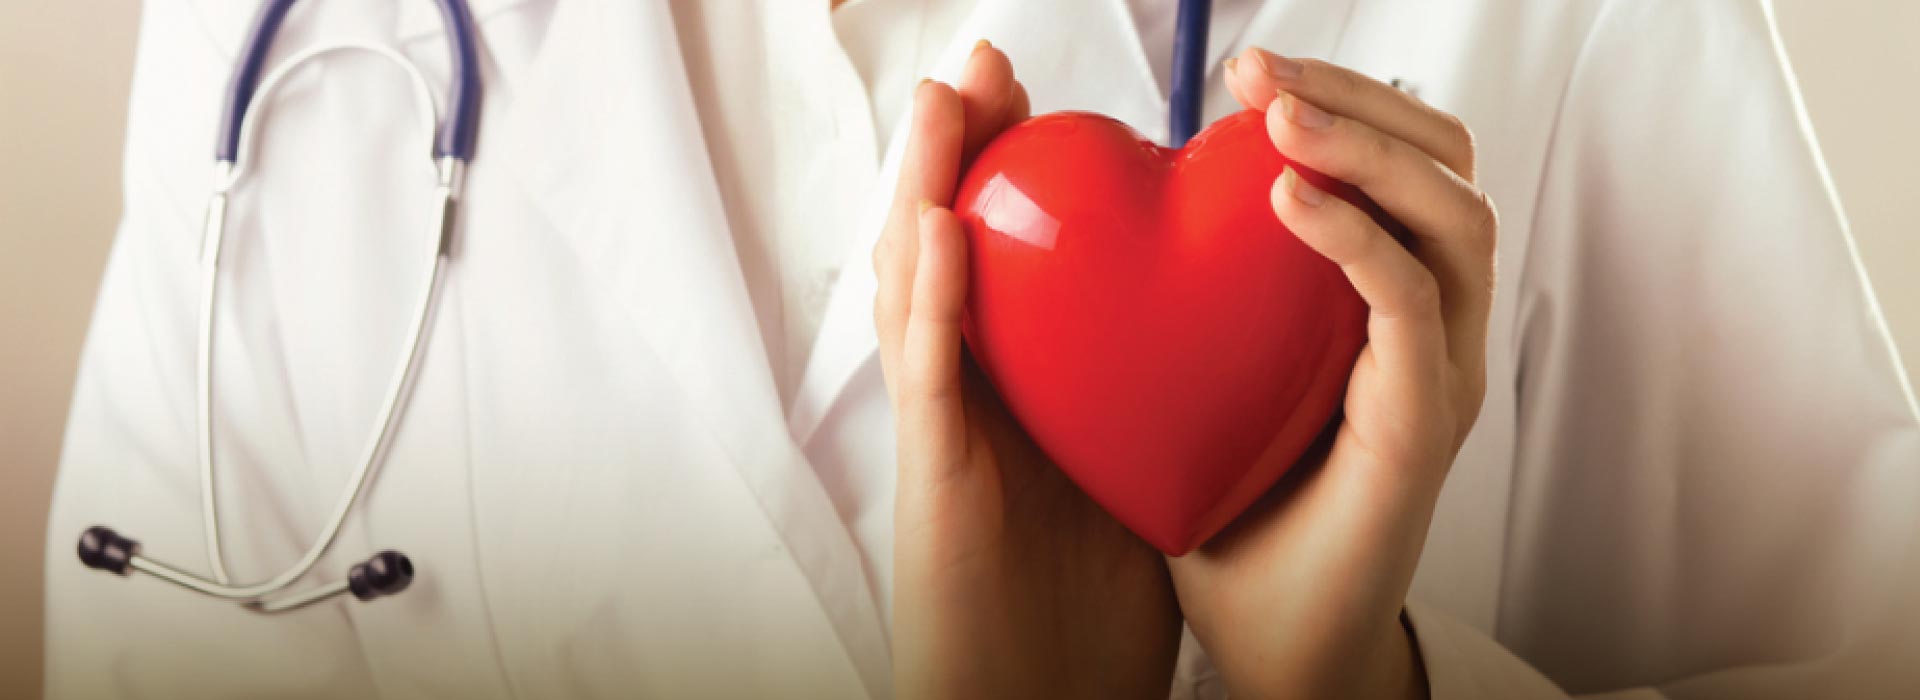 Imagem ilustrativa de uma médica segurando um coração